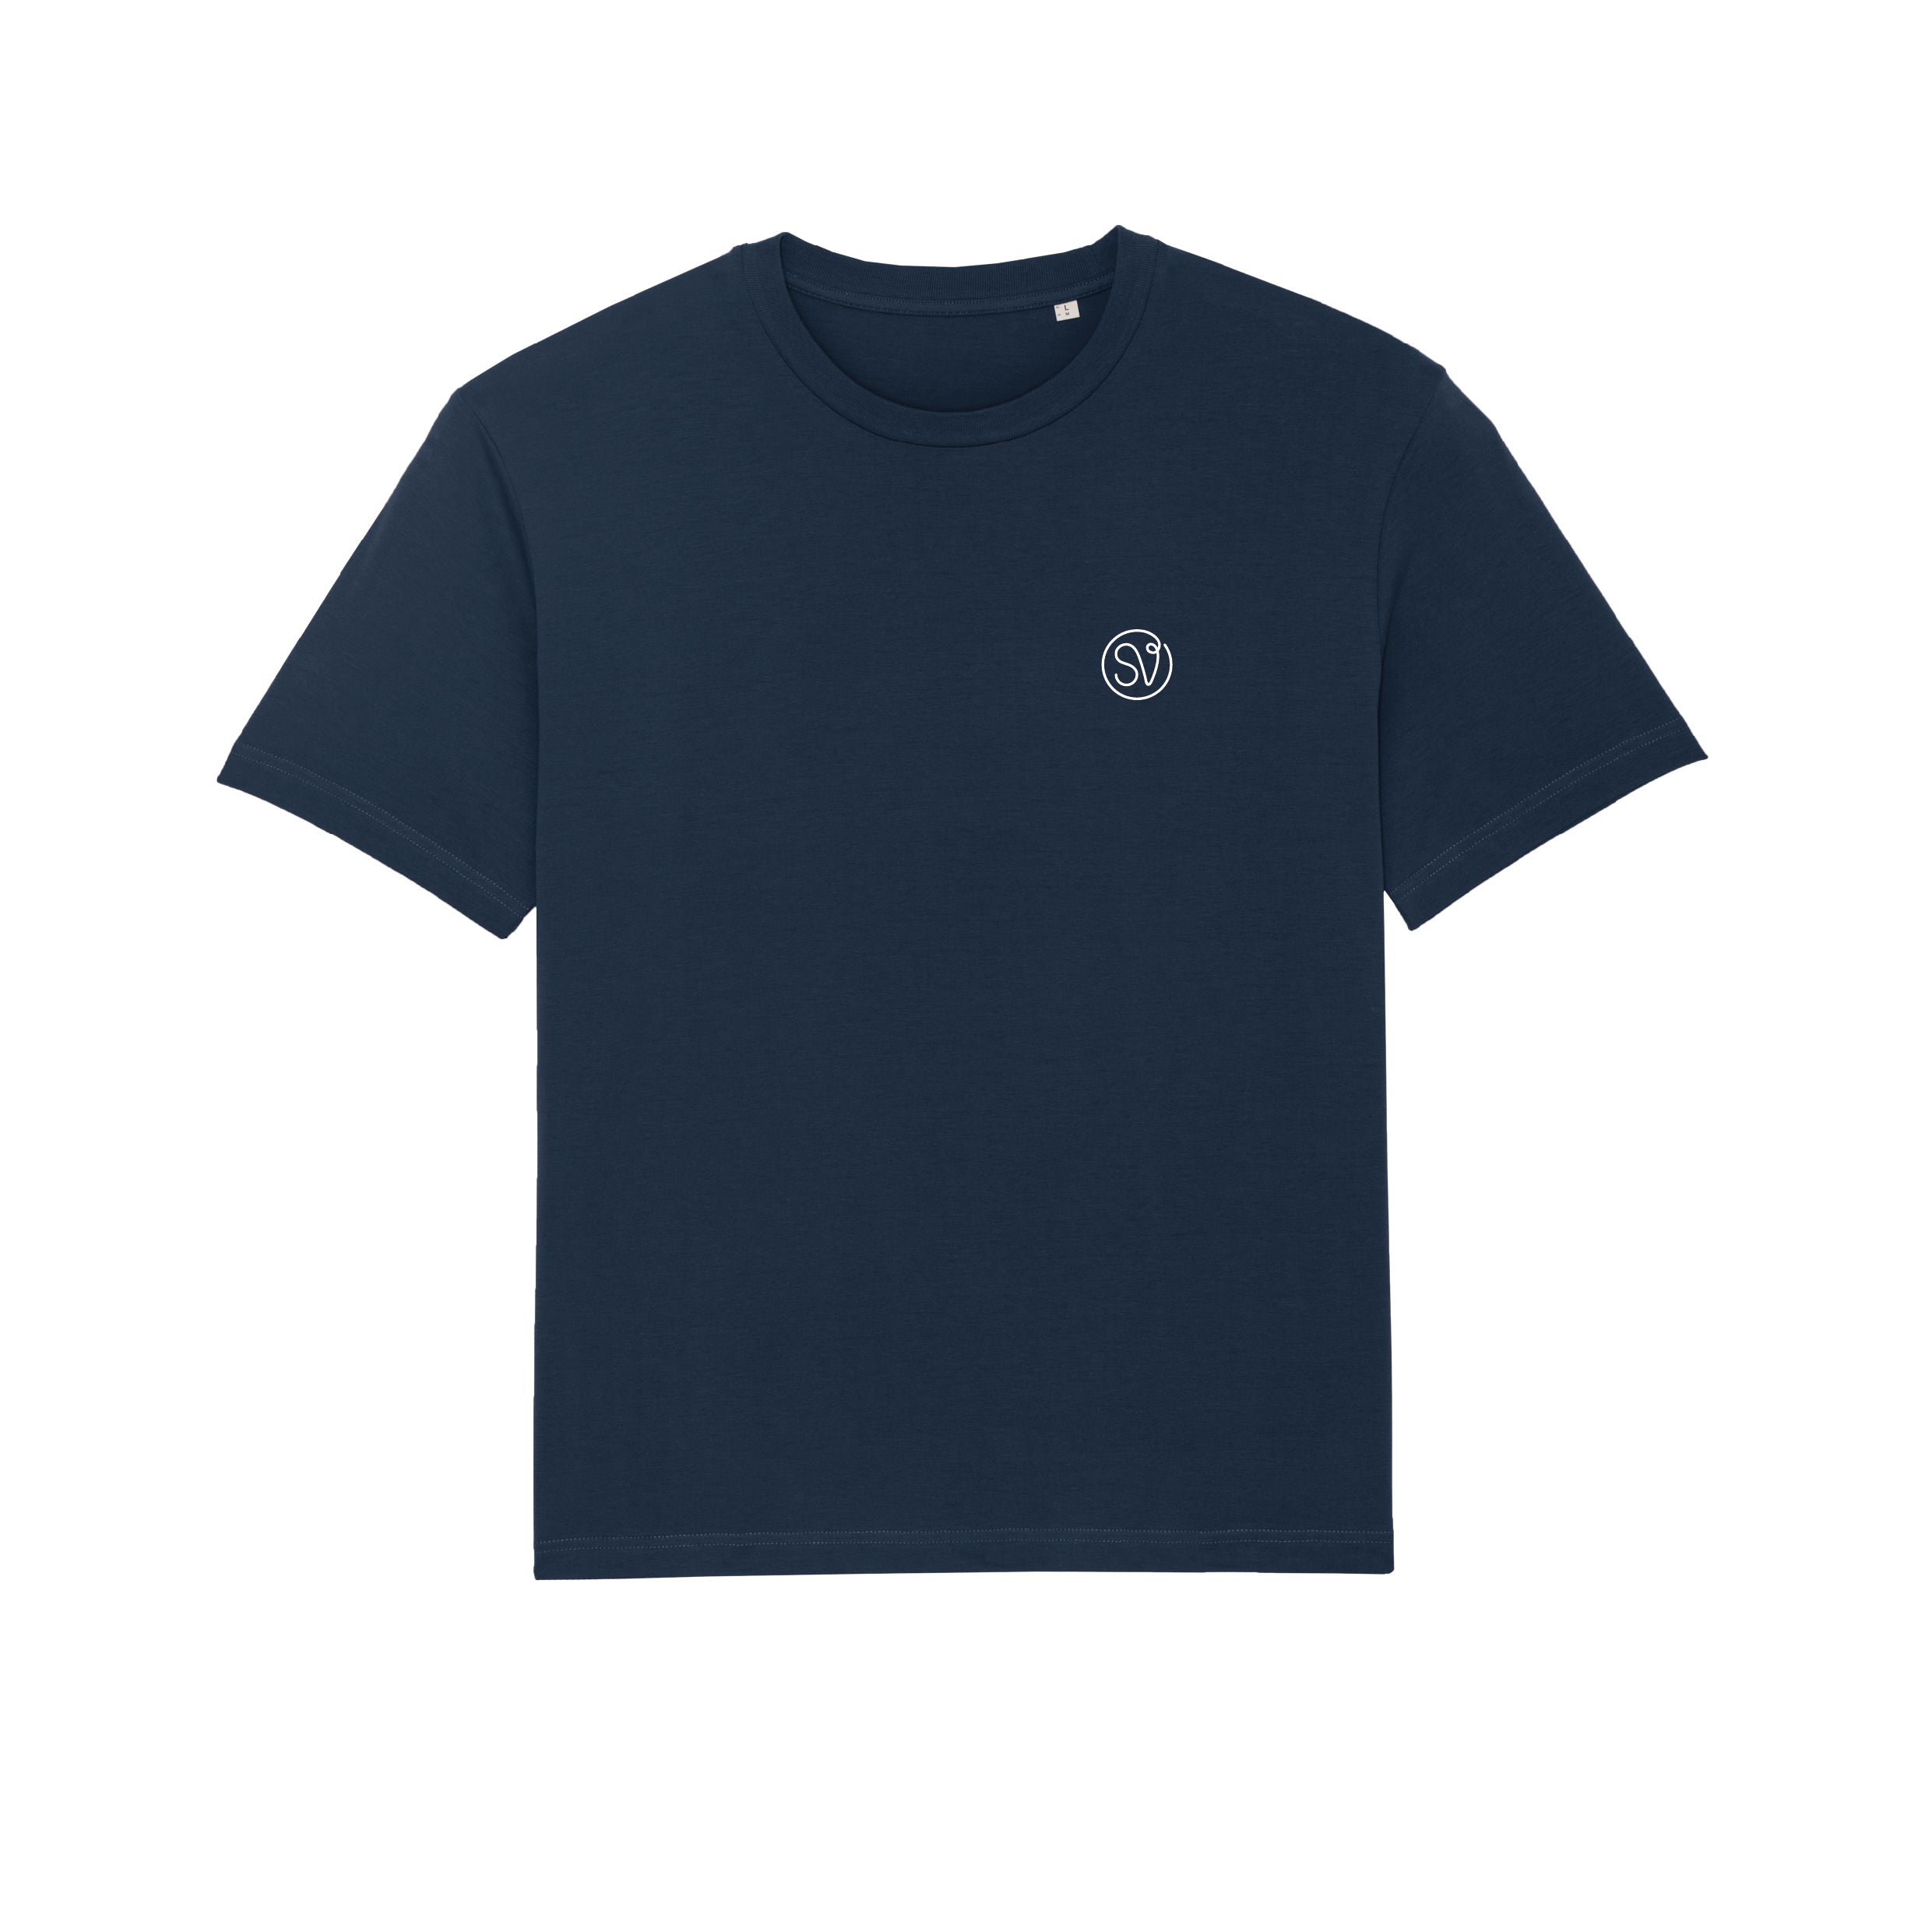 Camiseta SV Basic - Navy